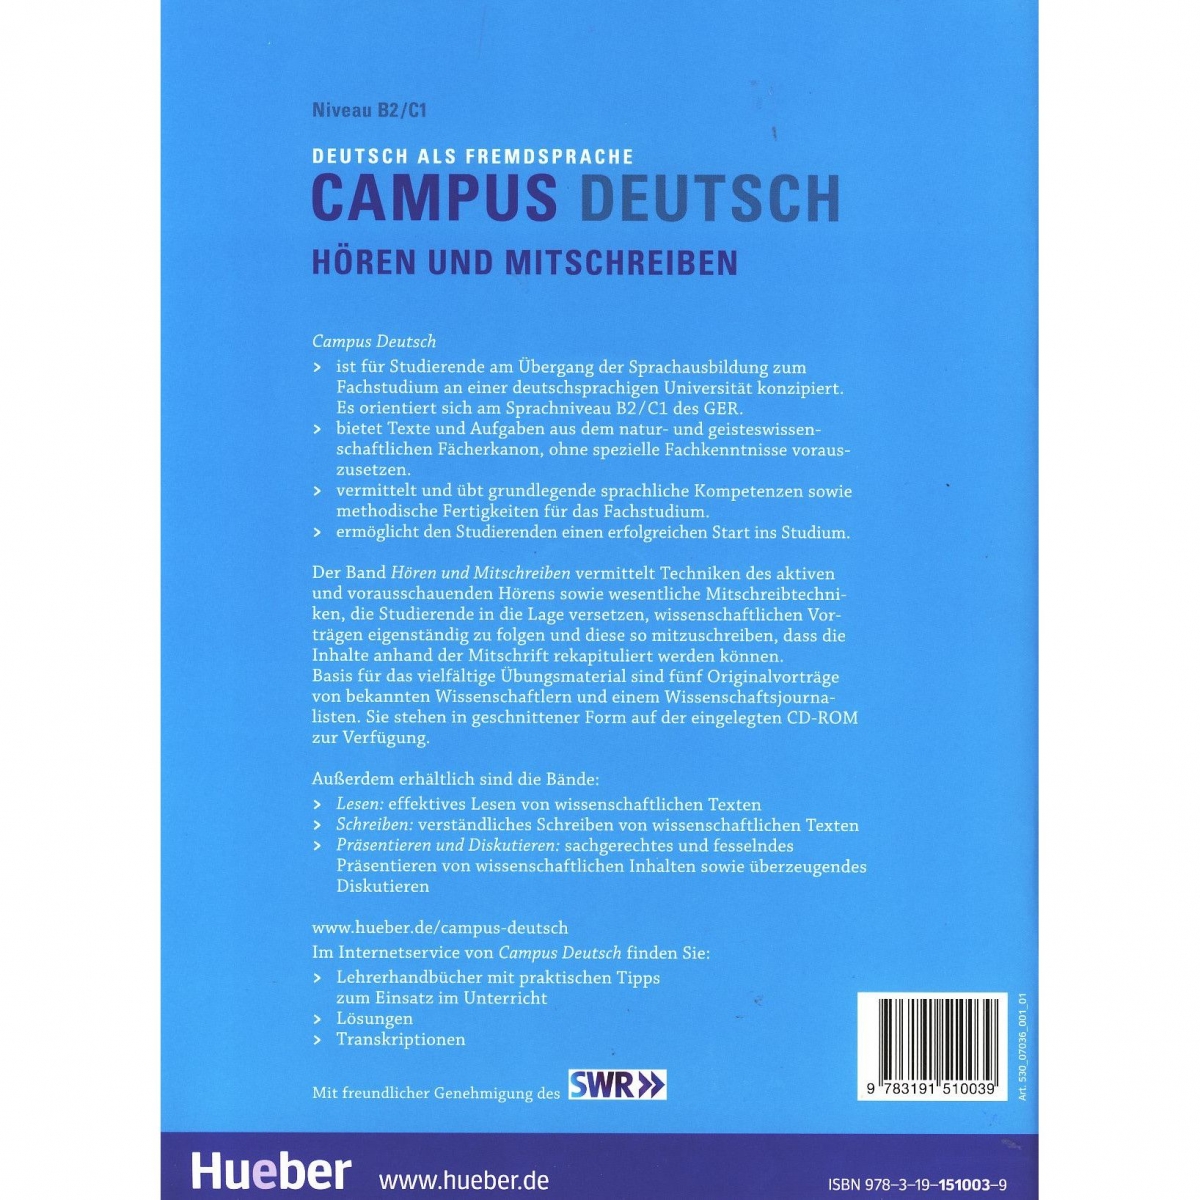  Campus Deutsch - Hören und Mitschreiben